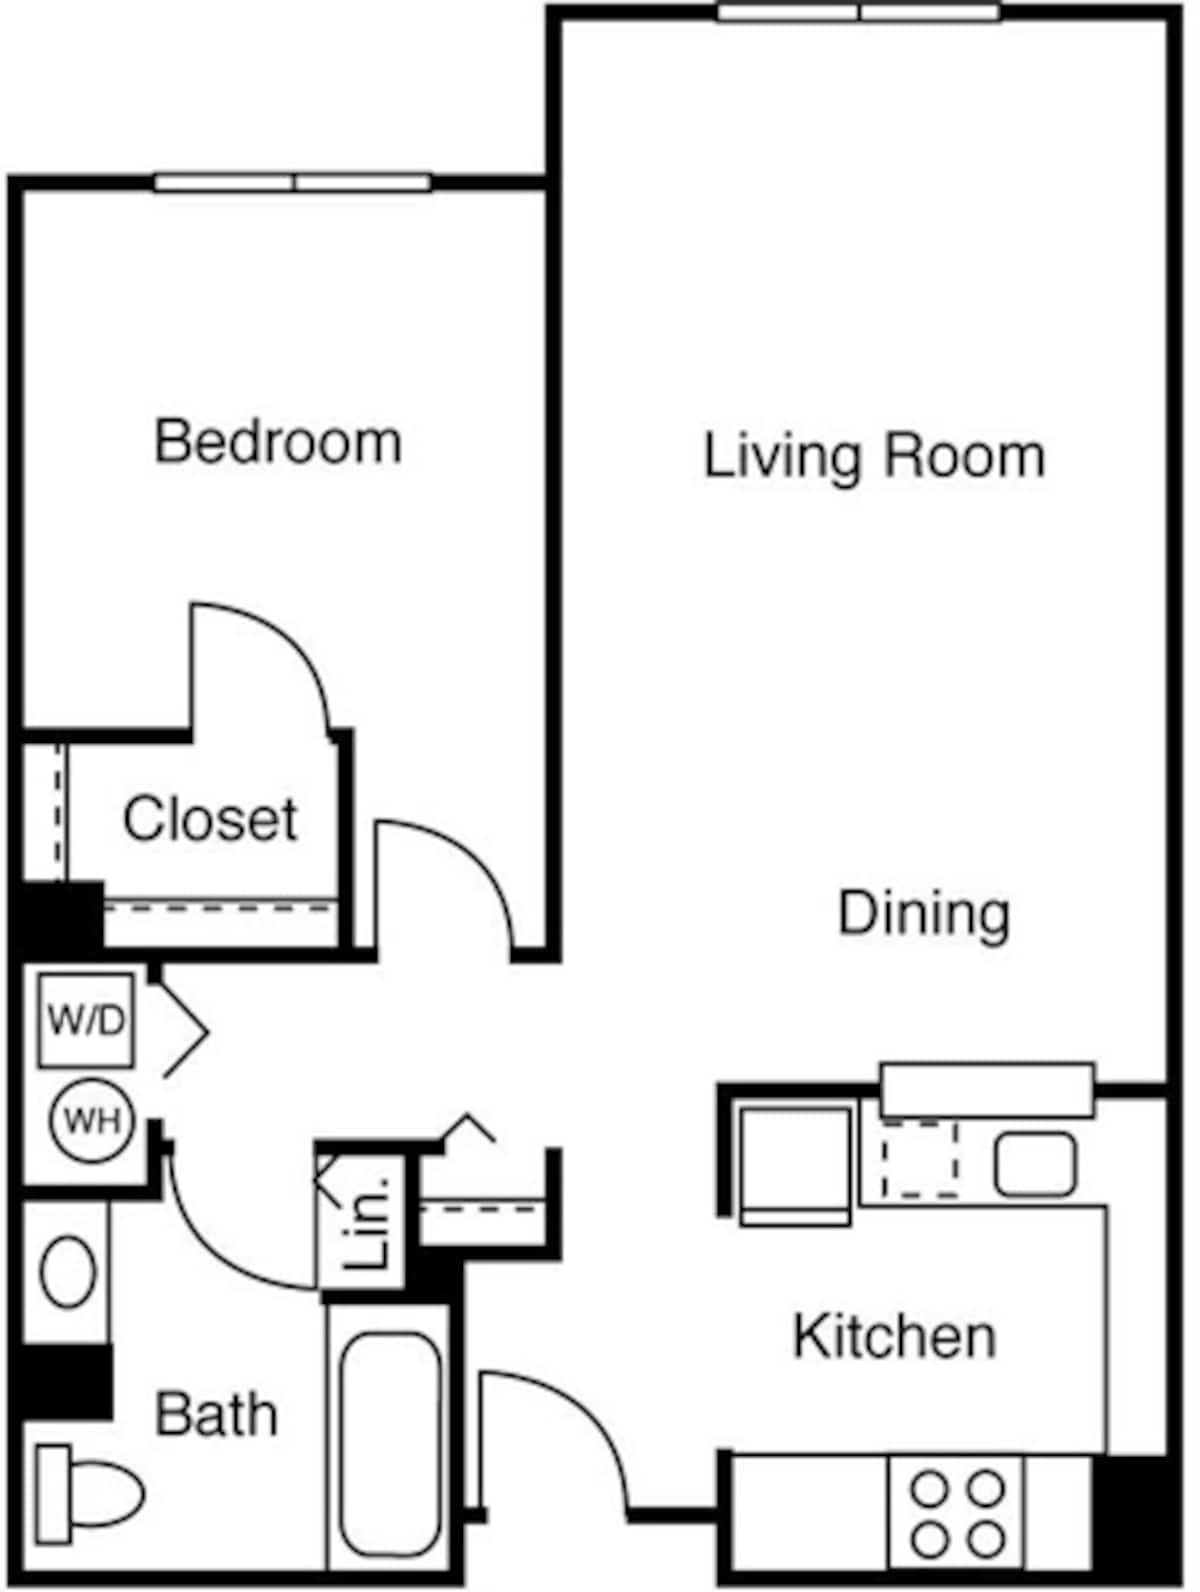 Floorplan diagram for 1 Bedroom J, showing 1 bedroom